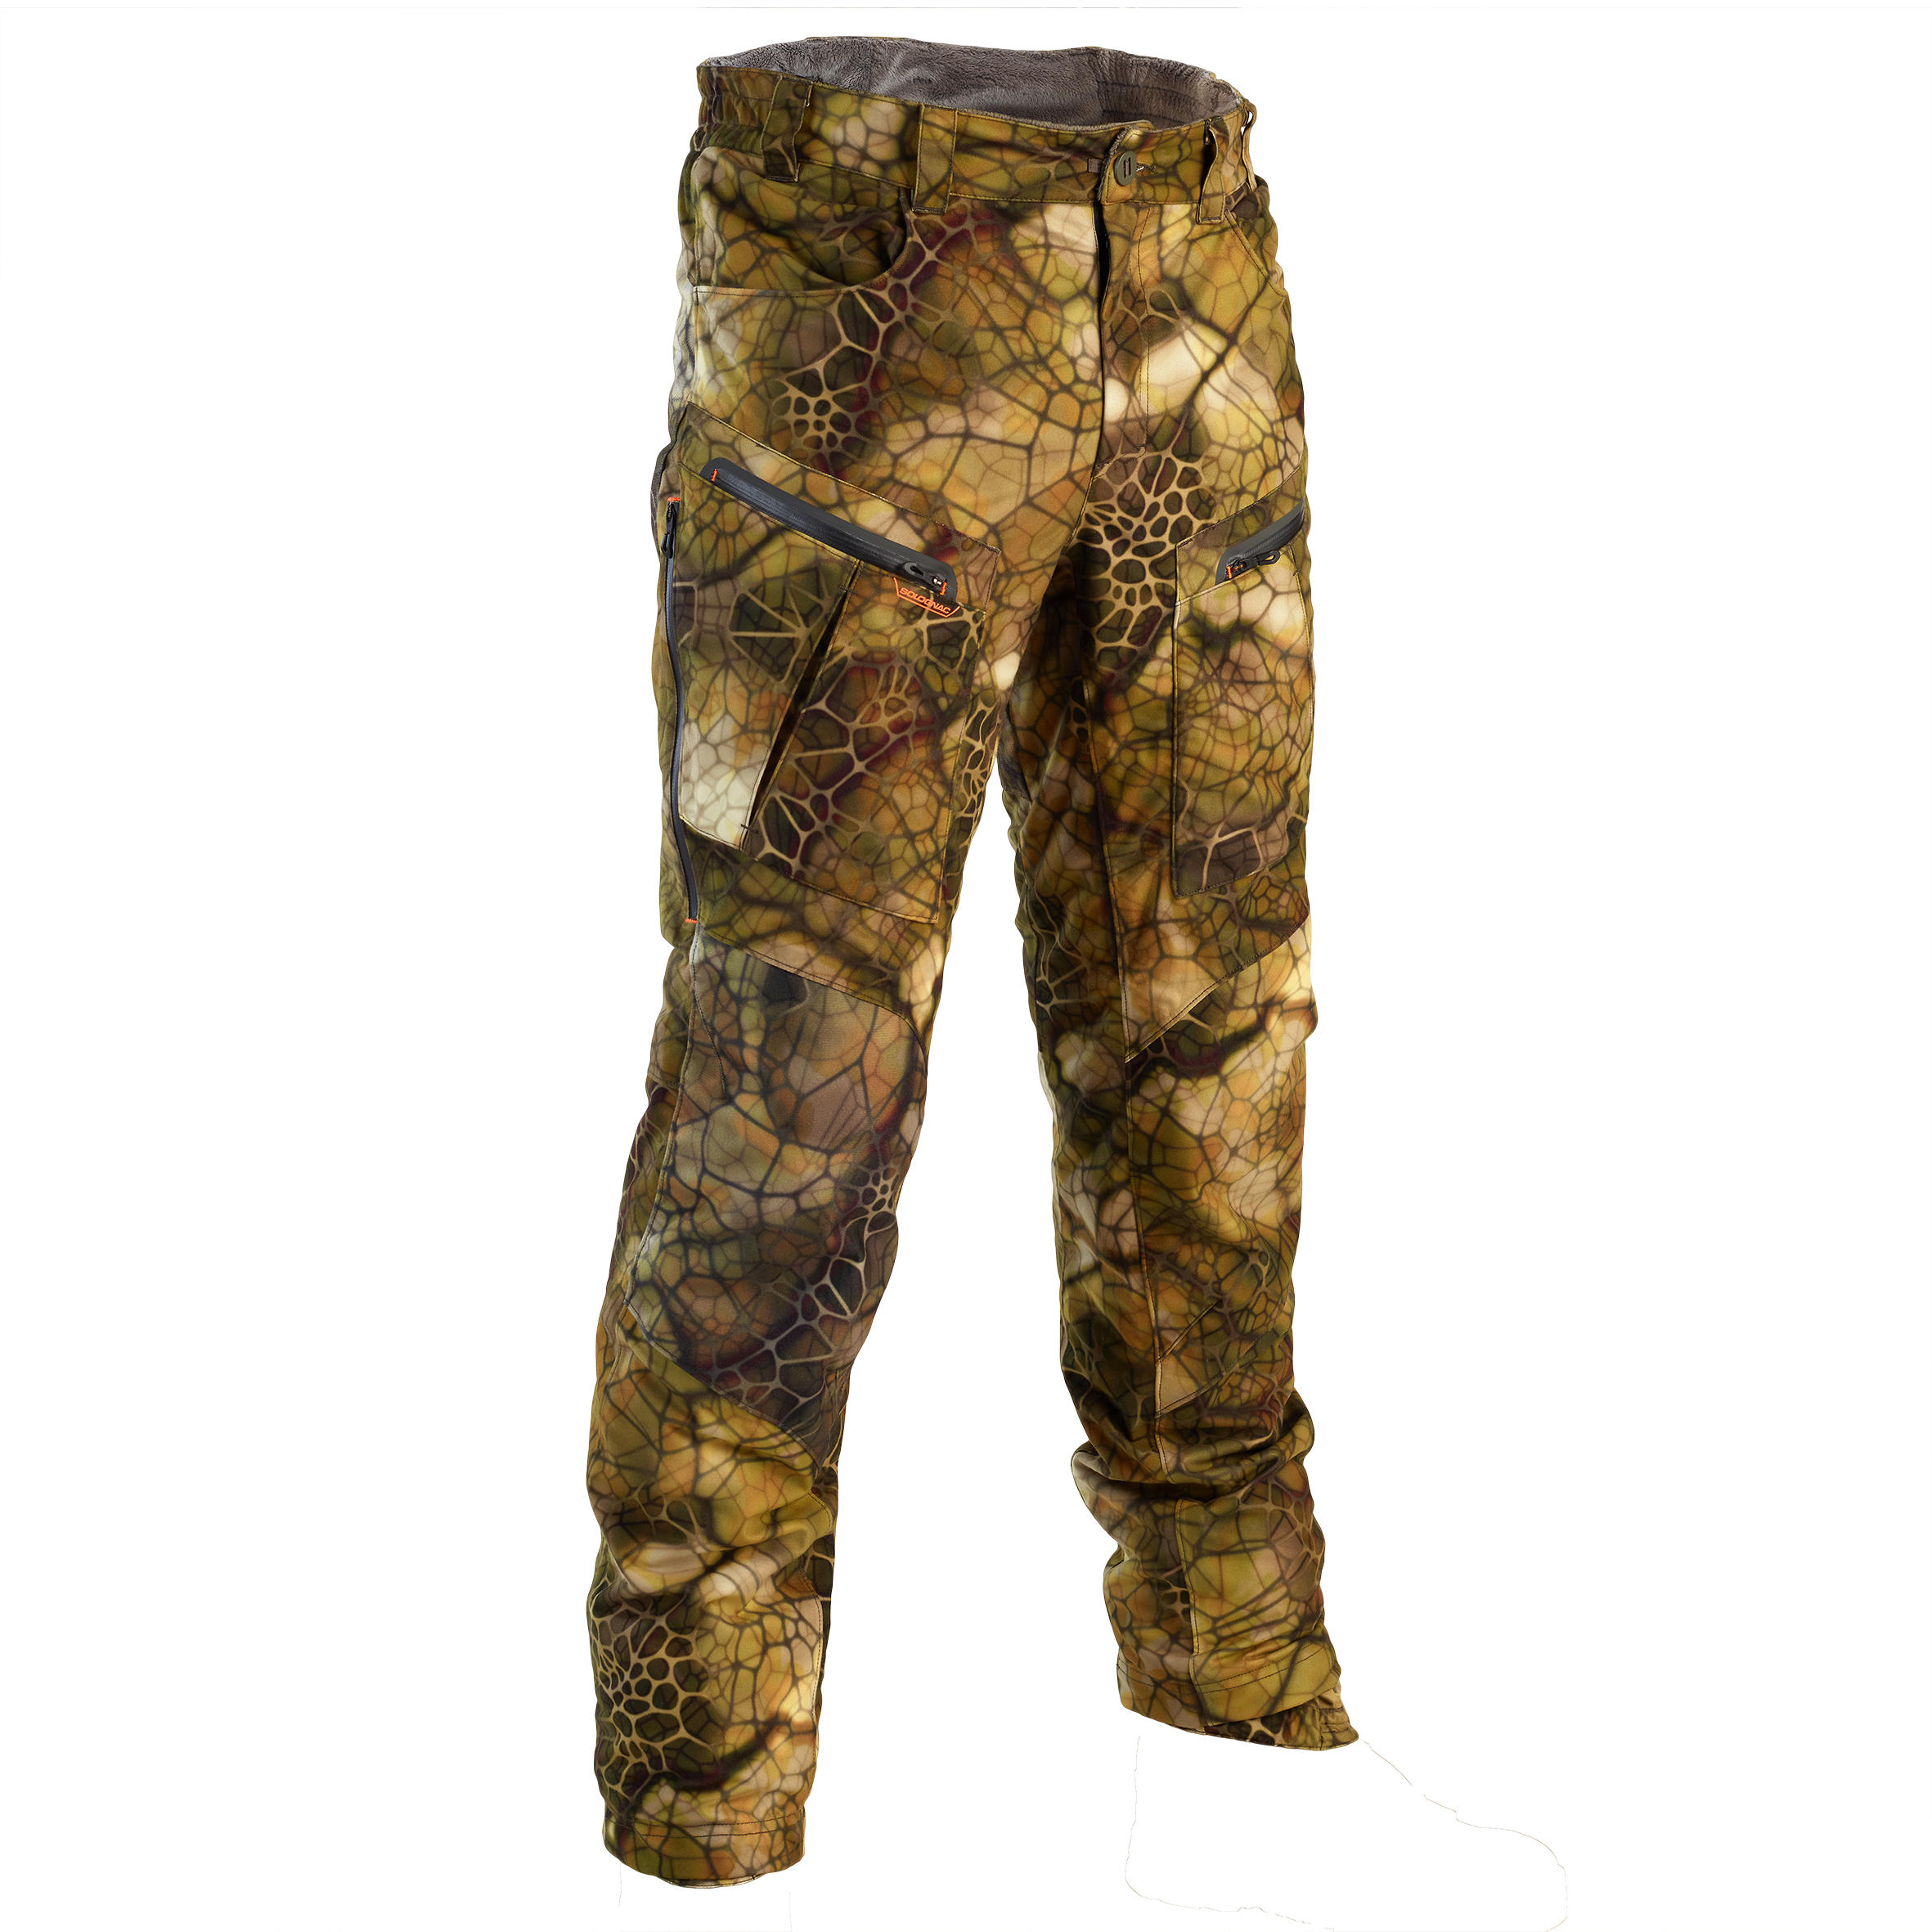 Pantalon Impermeabil Călduros 900 camuflaj Furtiv Bărbați La Oferta Online decathlon imagine La Oferta Online